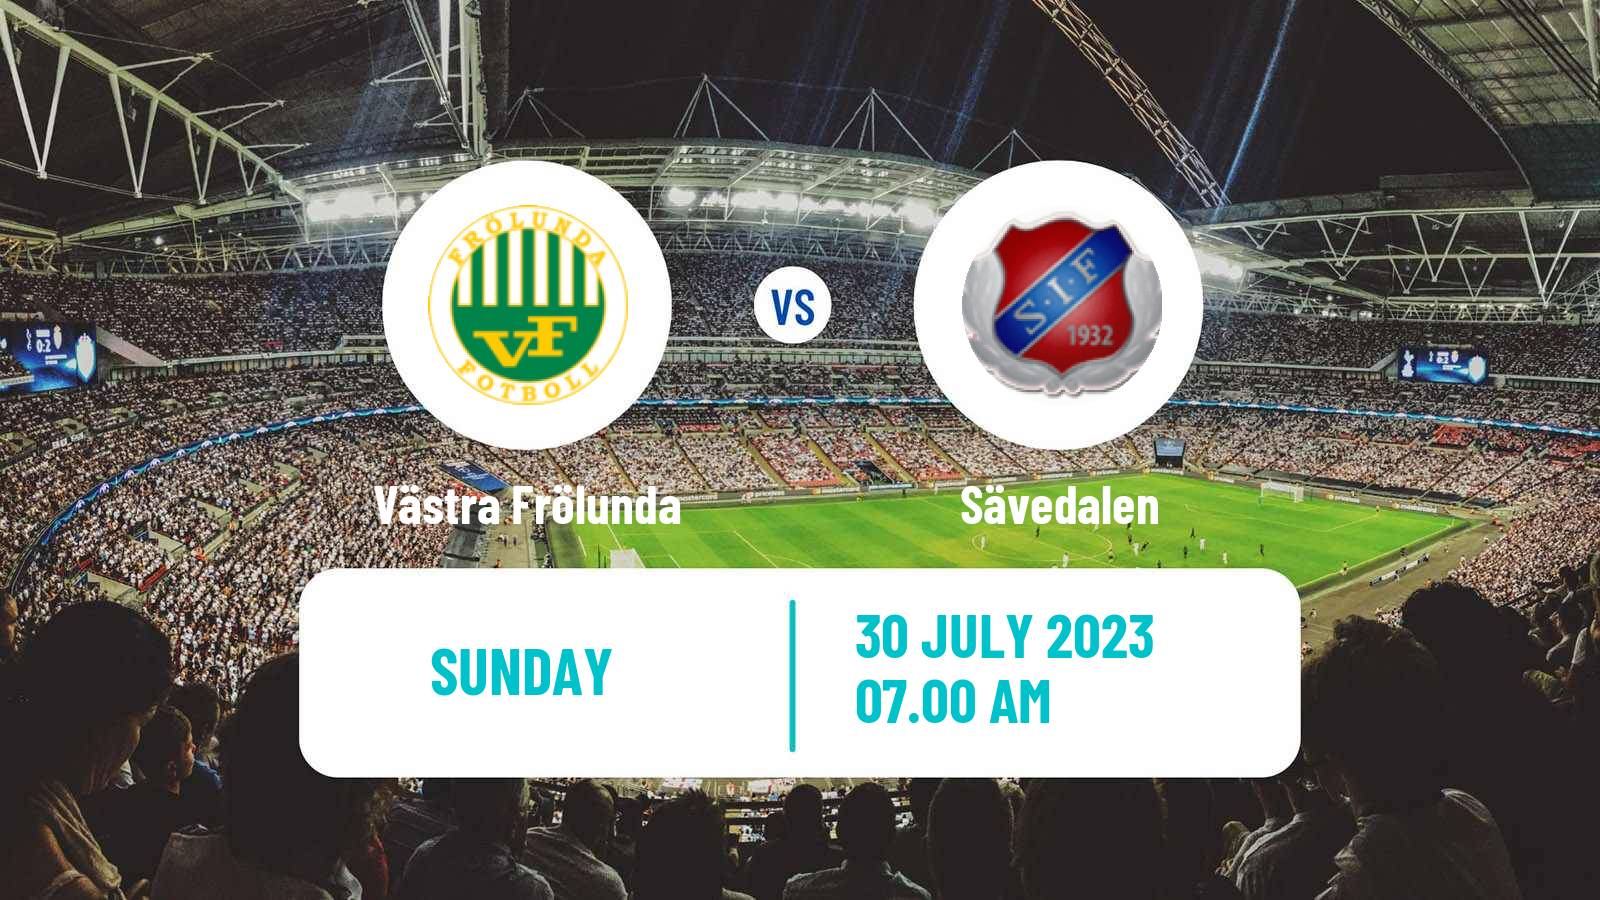 Soccer Swedish Division 2 - Västra Götaland Västra Frölunda - Sävedalen